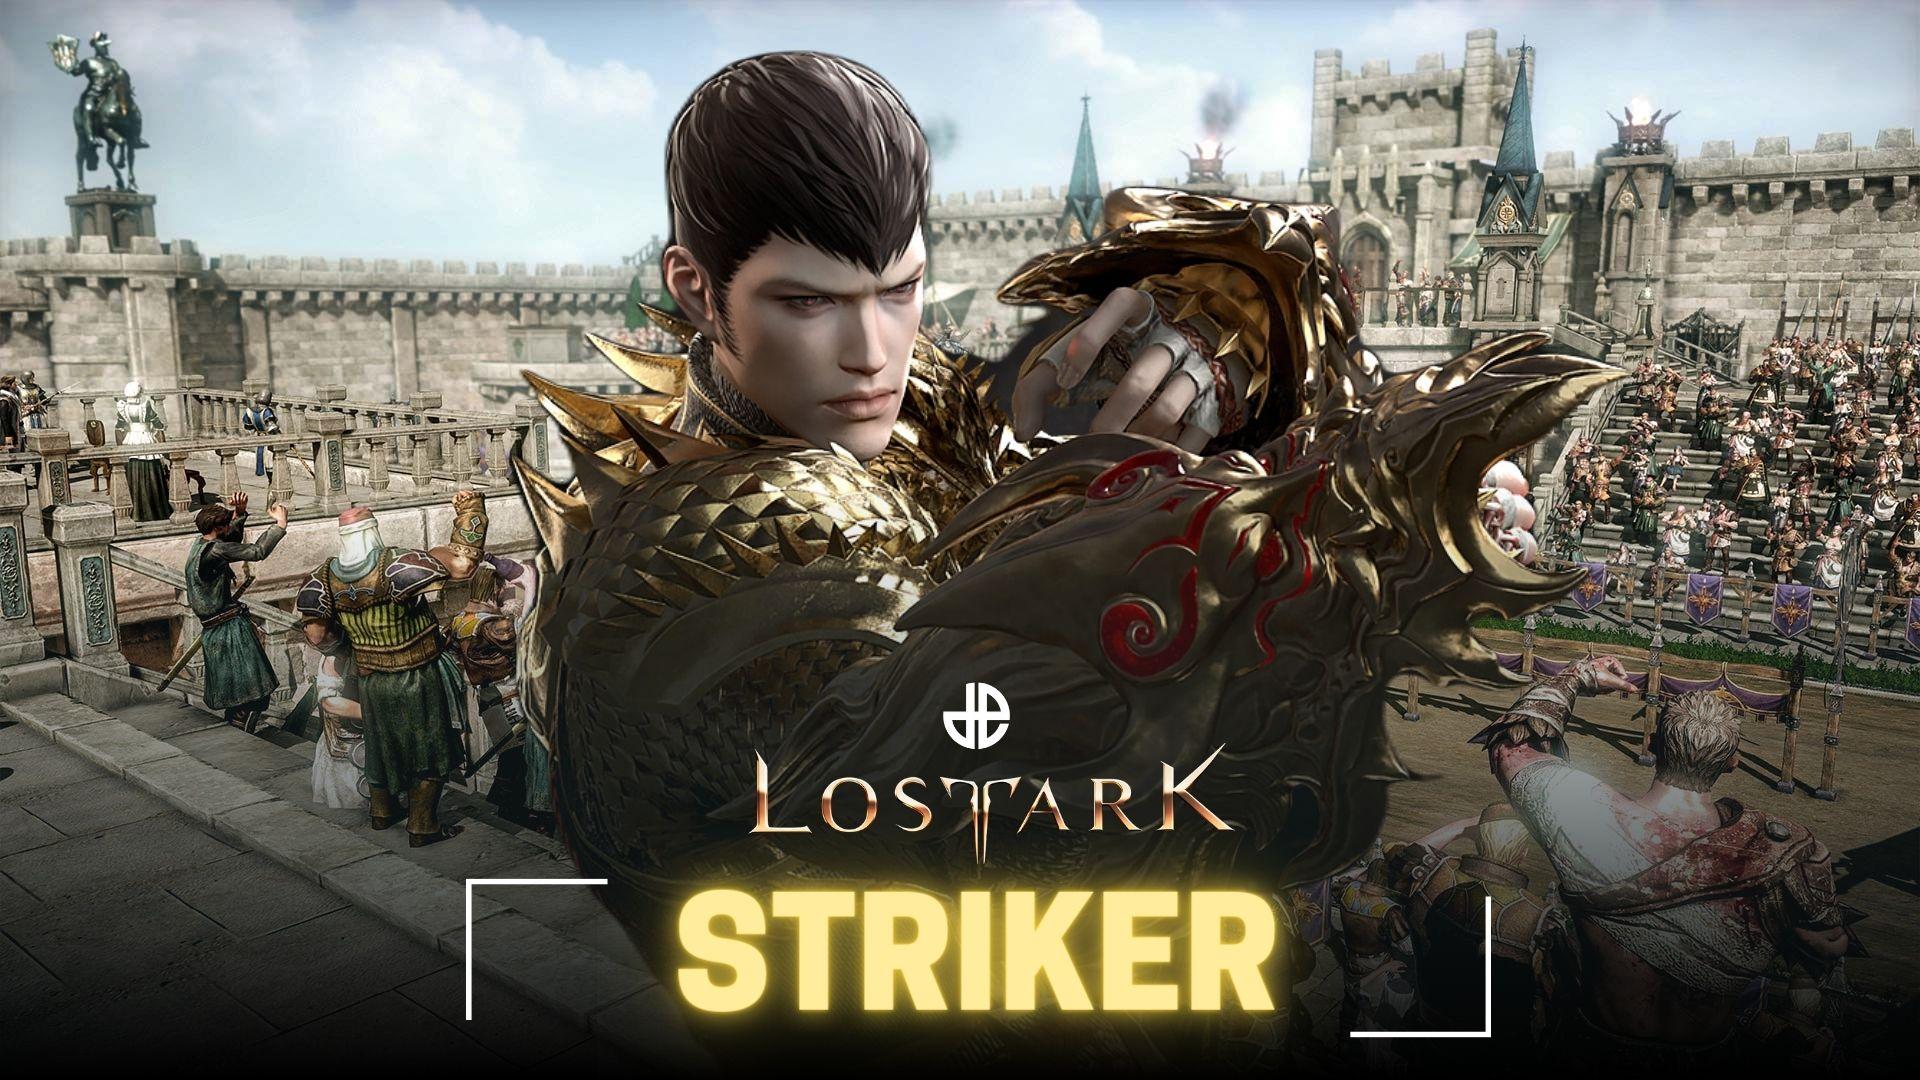 Lost Ark Striker